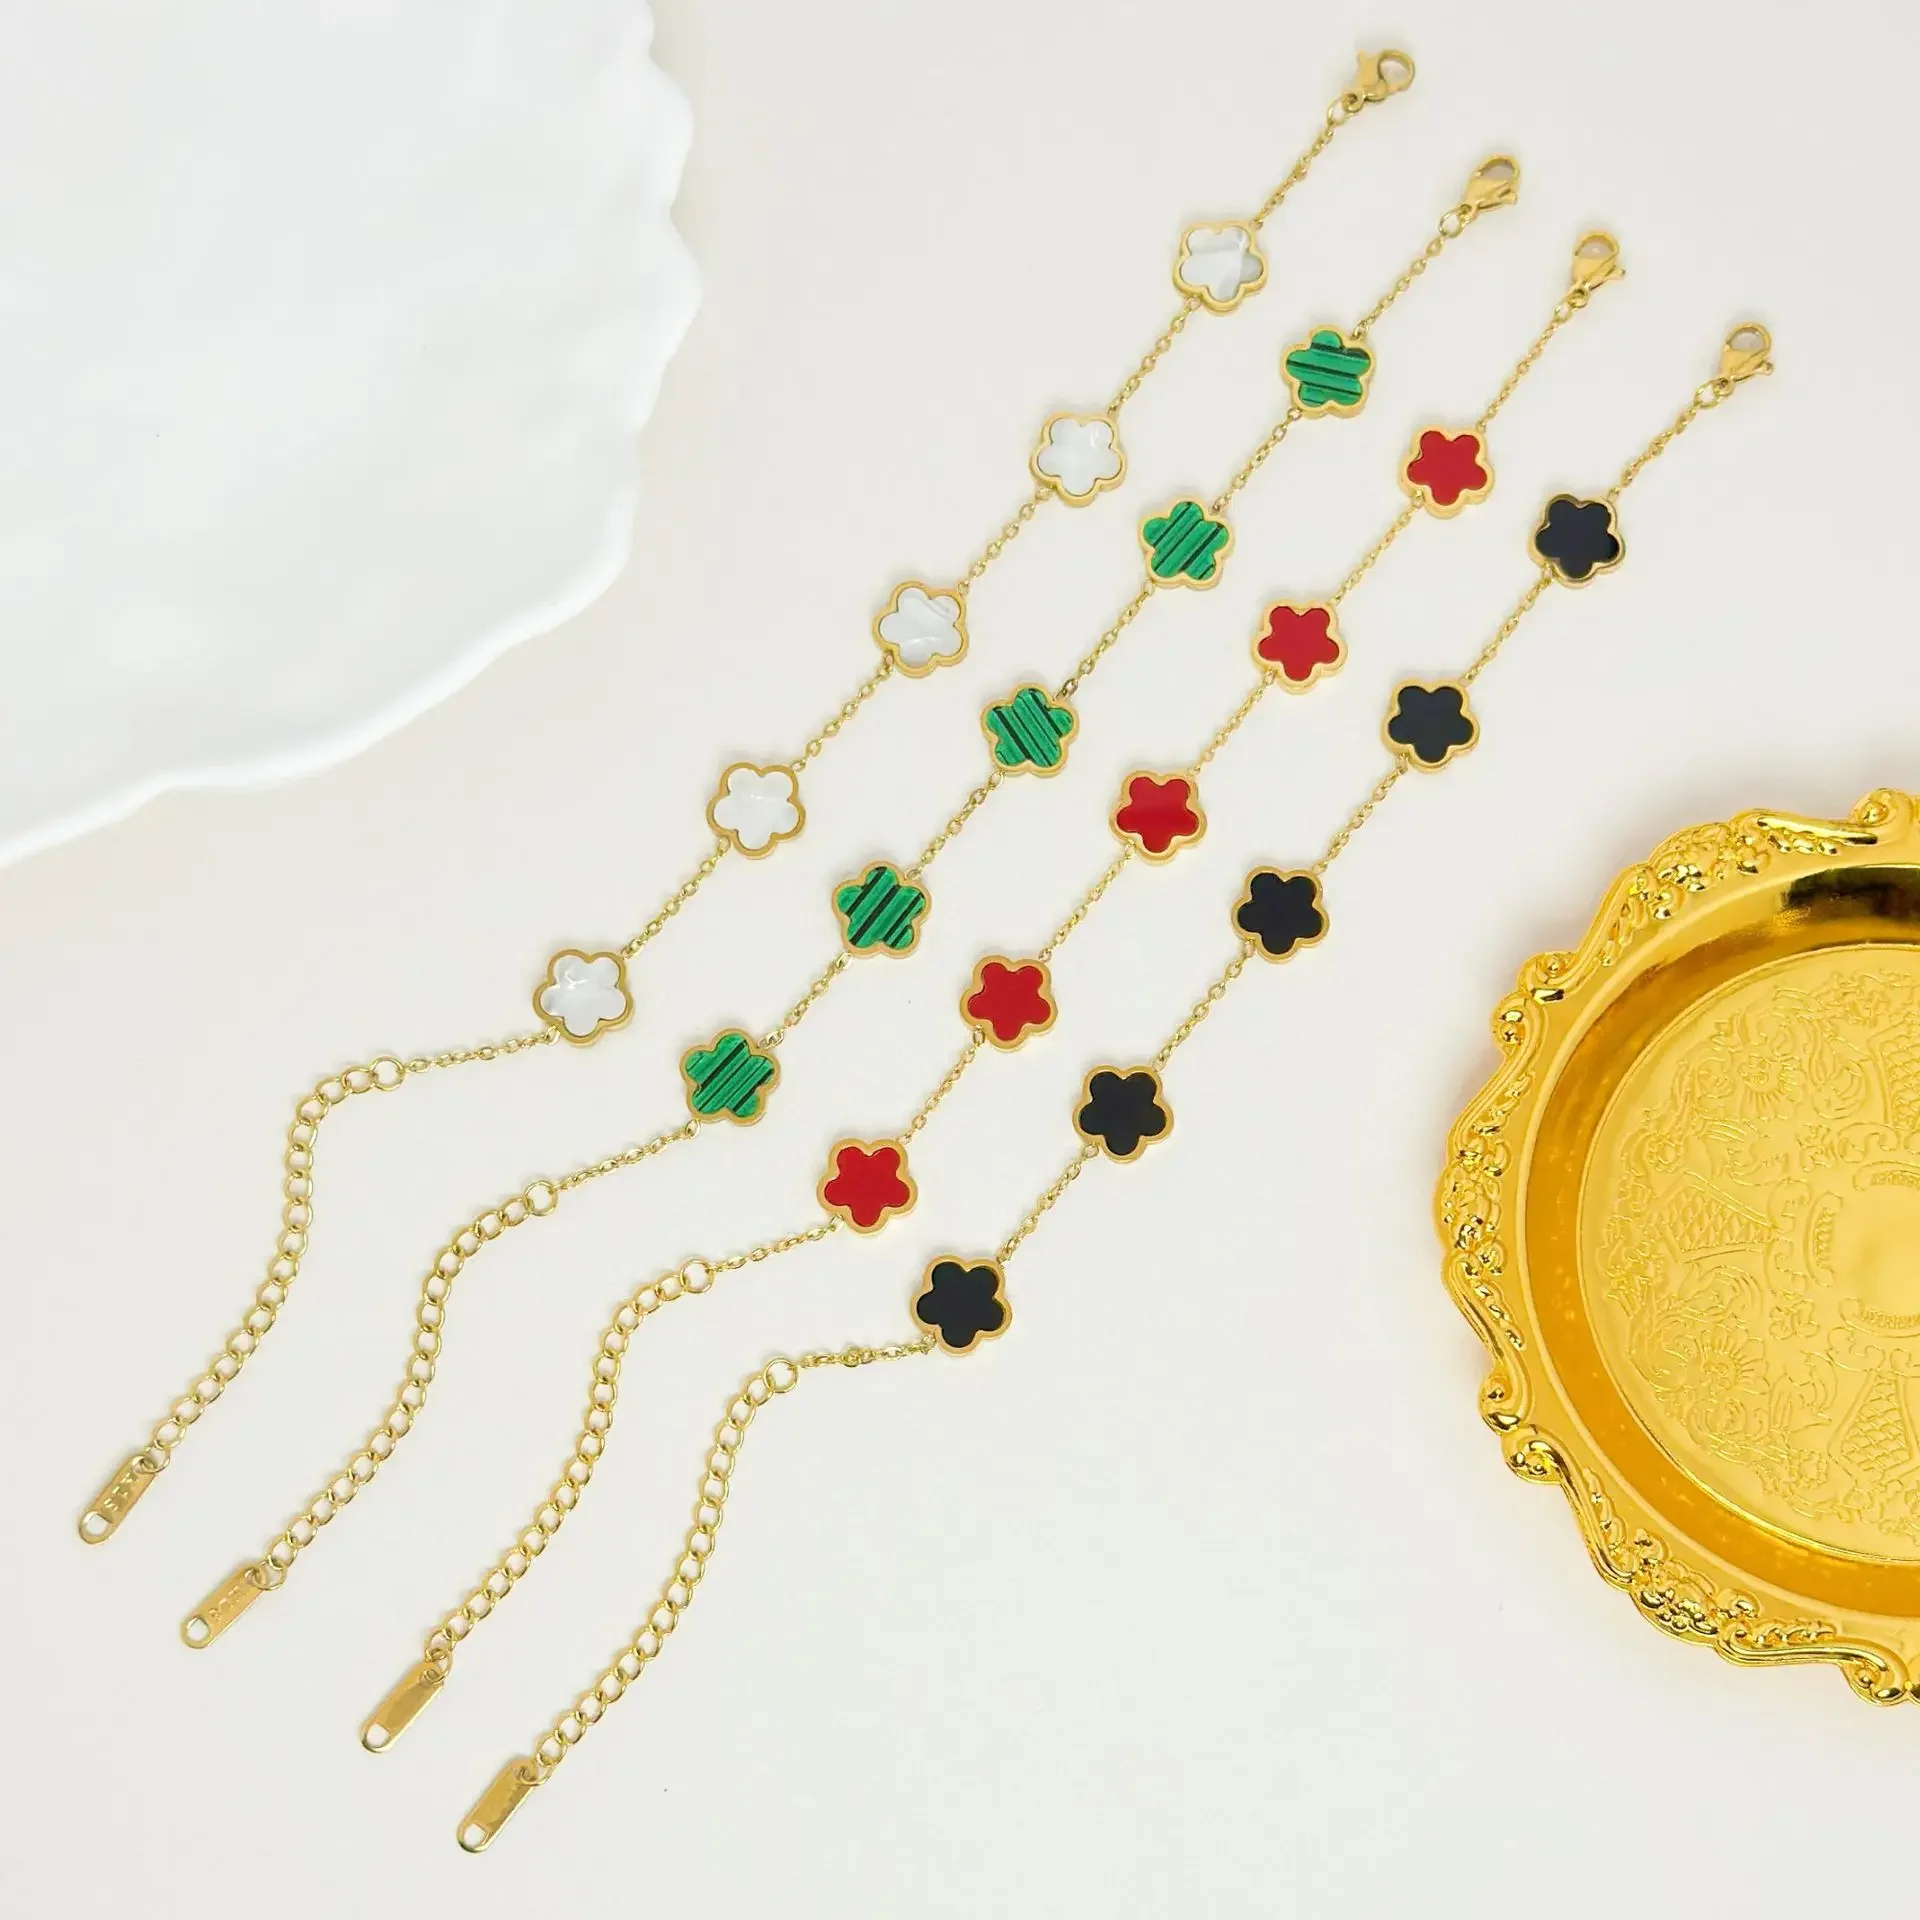 Designer Bracelets for Women, Luxury Bracelets - Christmas